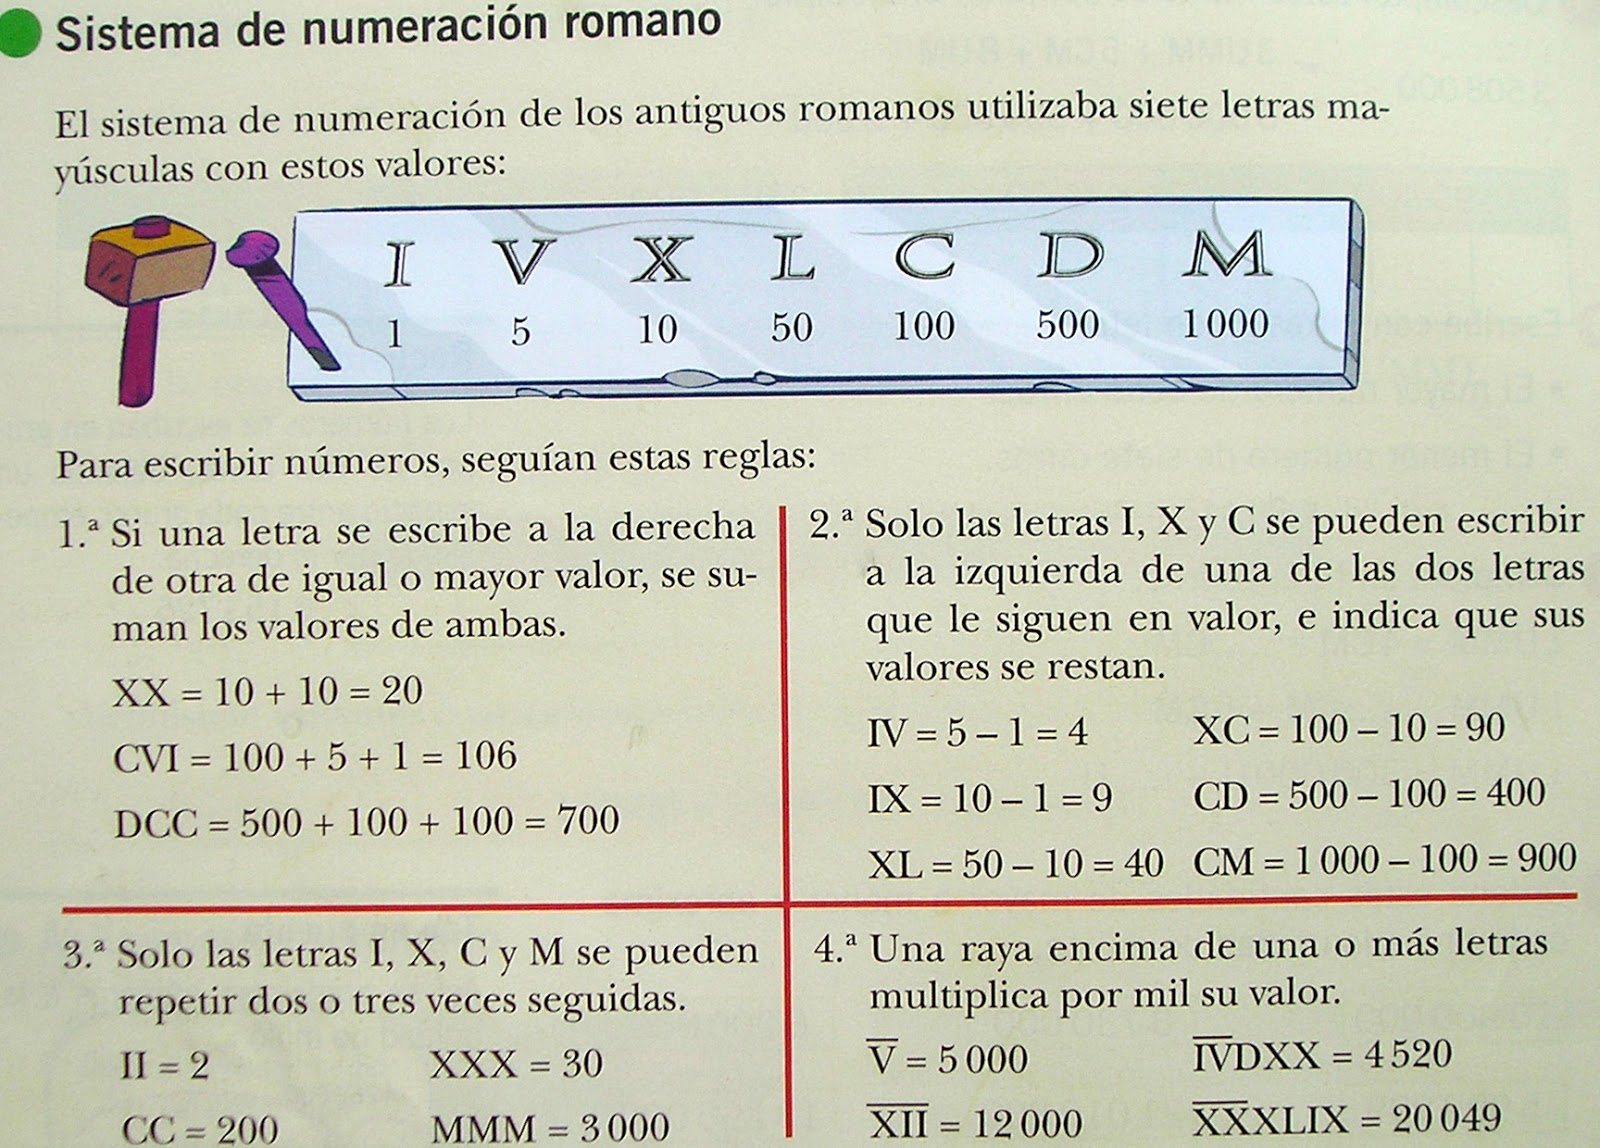 Escribir en números romanos